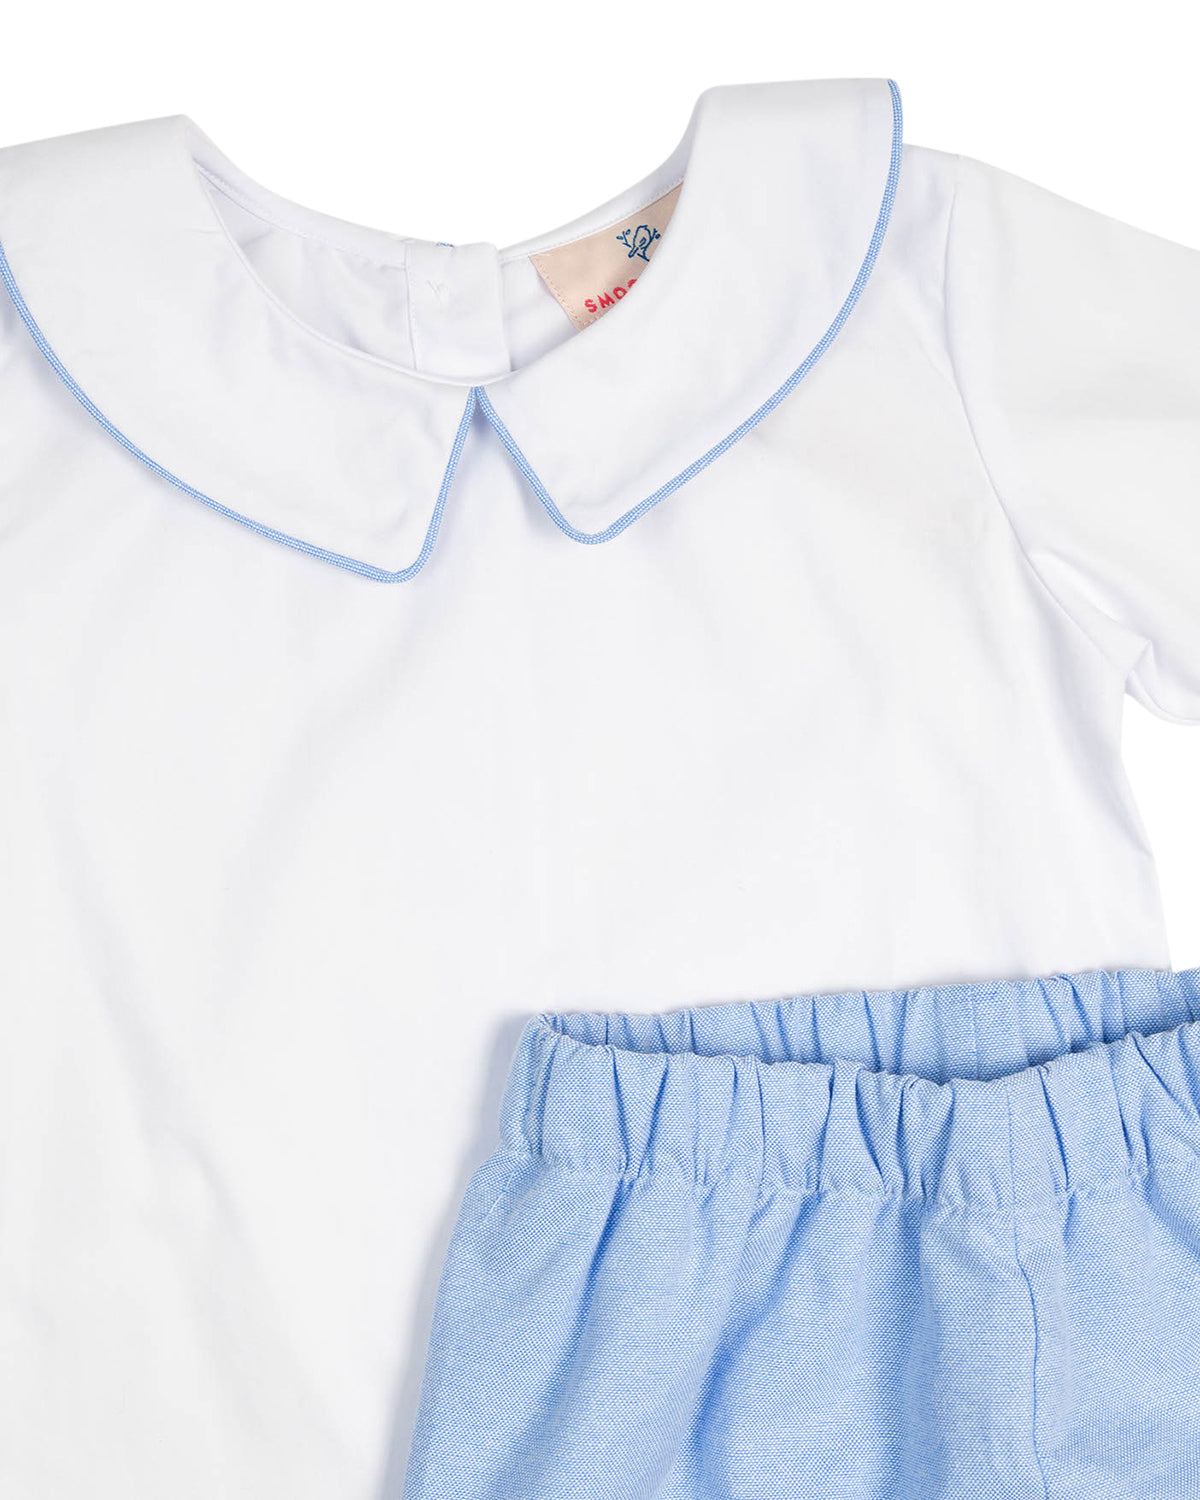 Blue Shorts with Peter Pan Collar Shirt